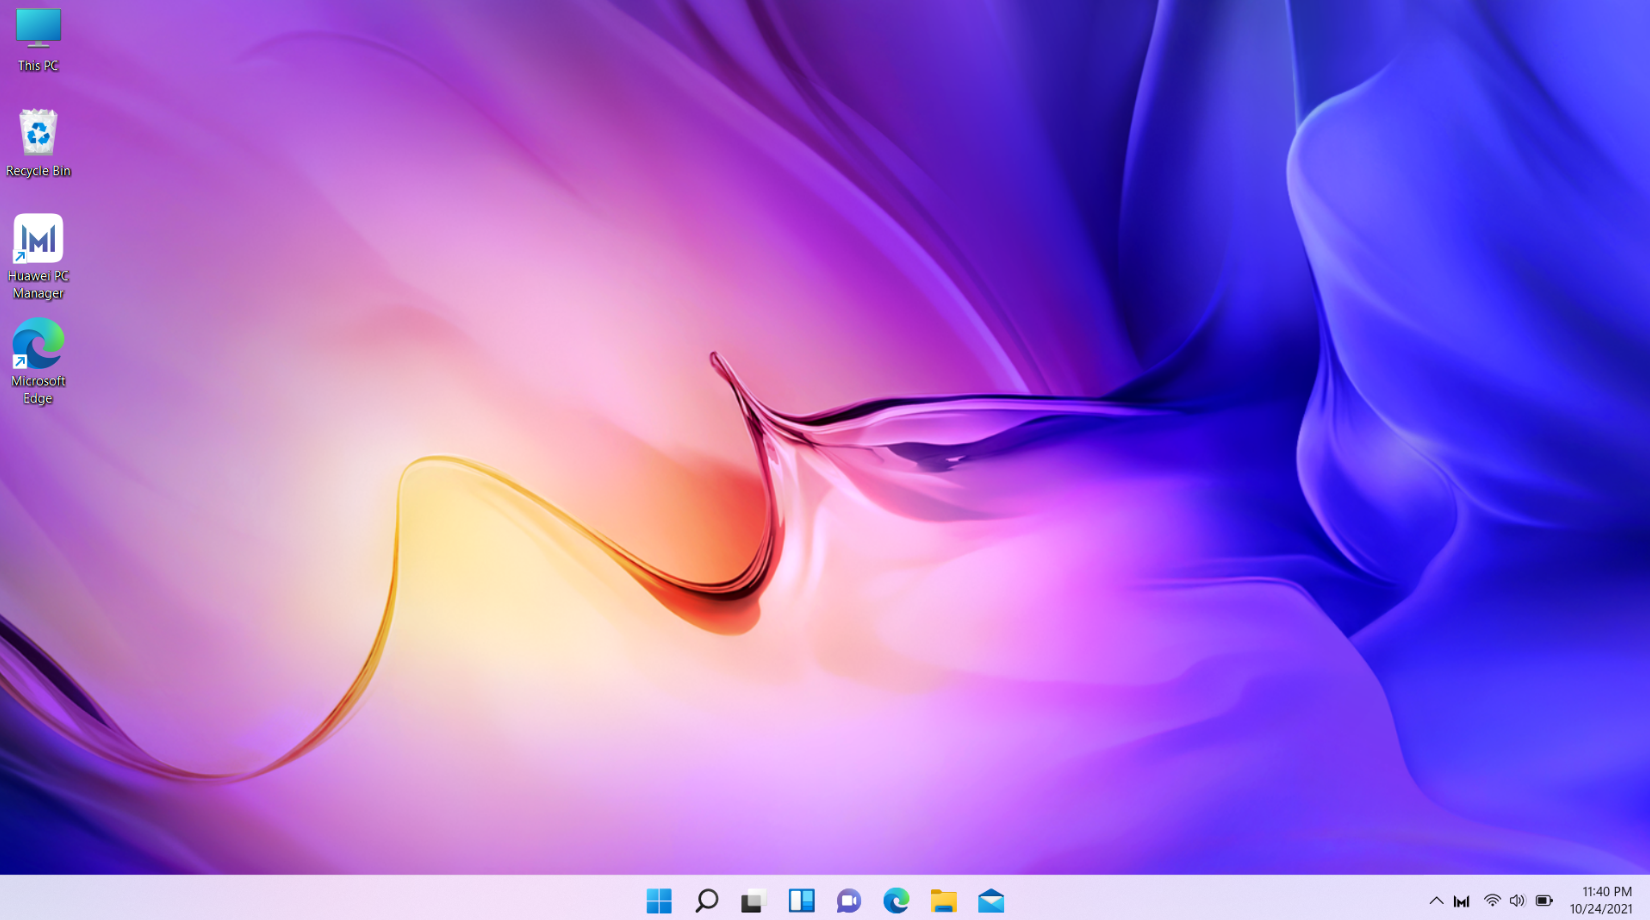 Tổng hợp 50+ hình nền win 10 đẹp nhất - Hình nền máy tính | Windows 10,  Wallpaper windows 10, Microsoft wallpaper